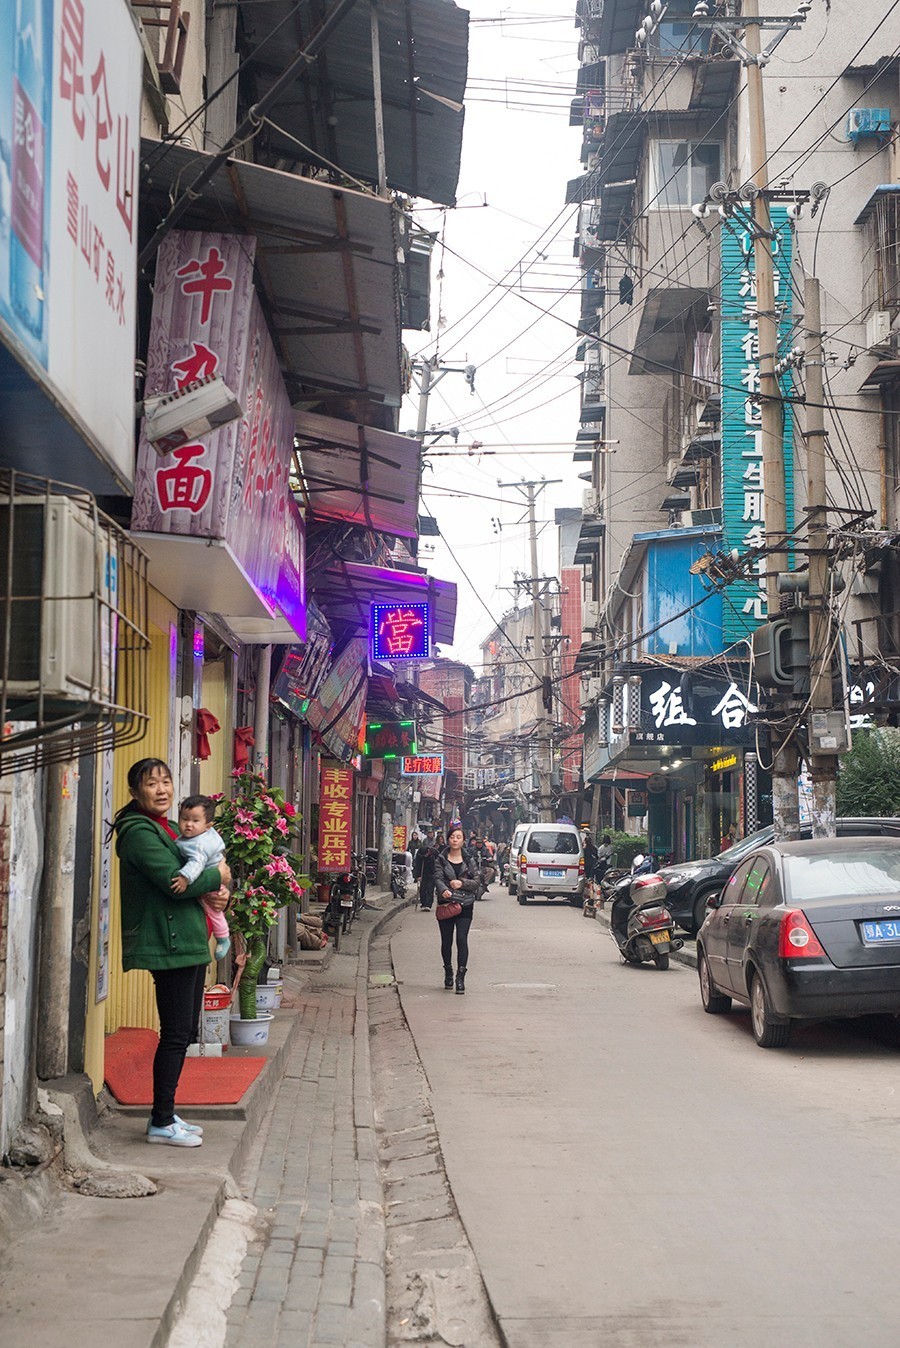 长堤街共计4000米 ,在街龄相若的武汉众多街道里,恐怕没有比它更长